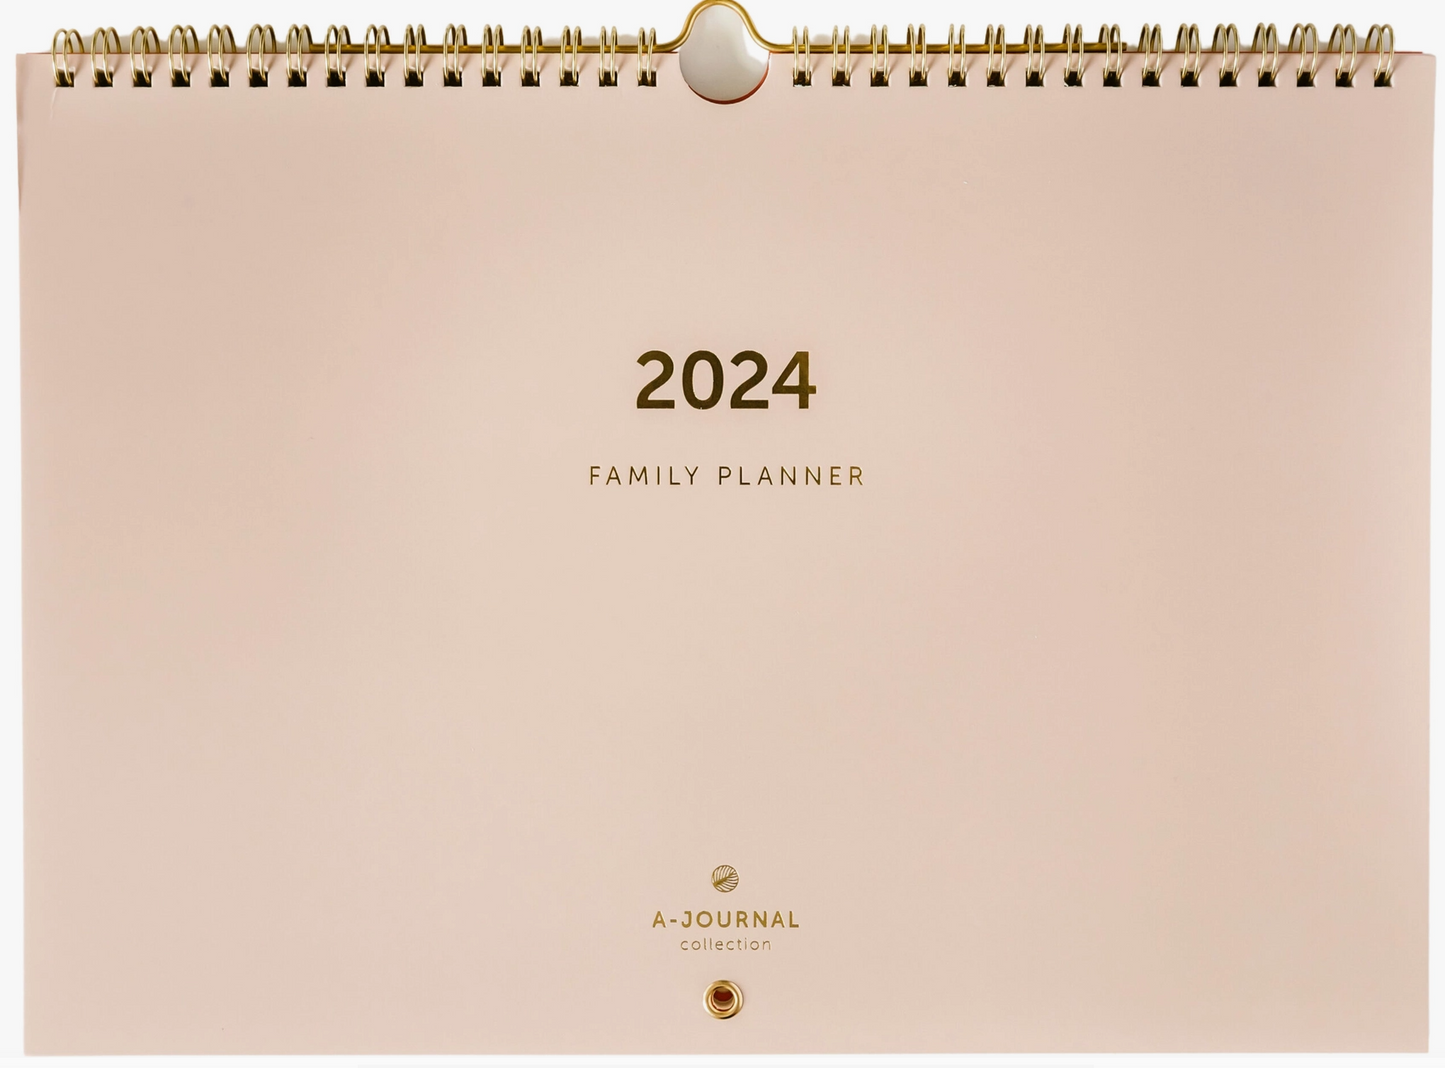 Family Planner 2024